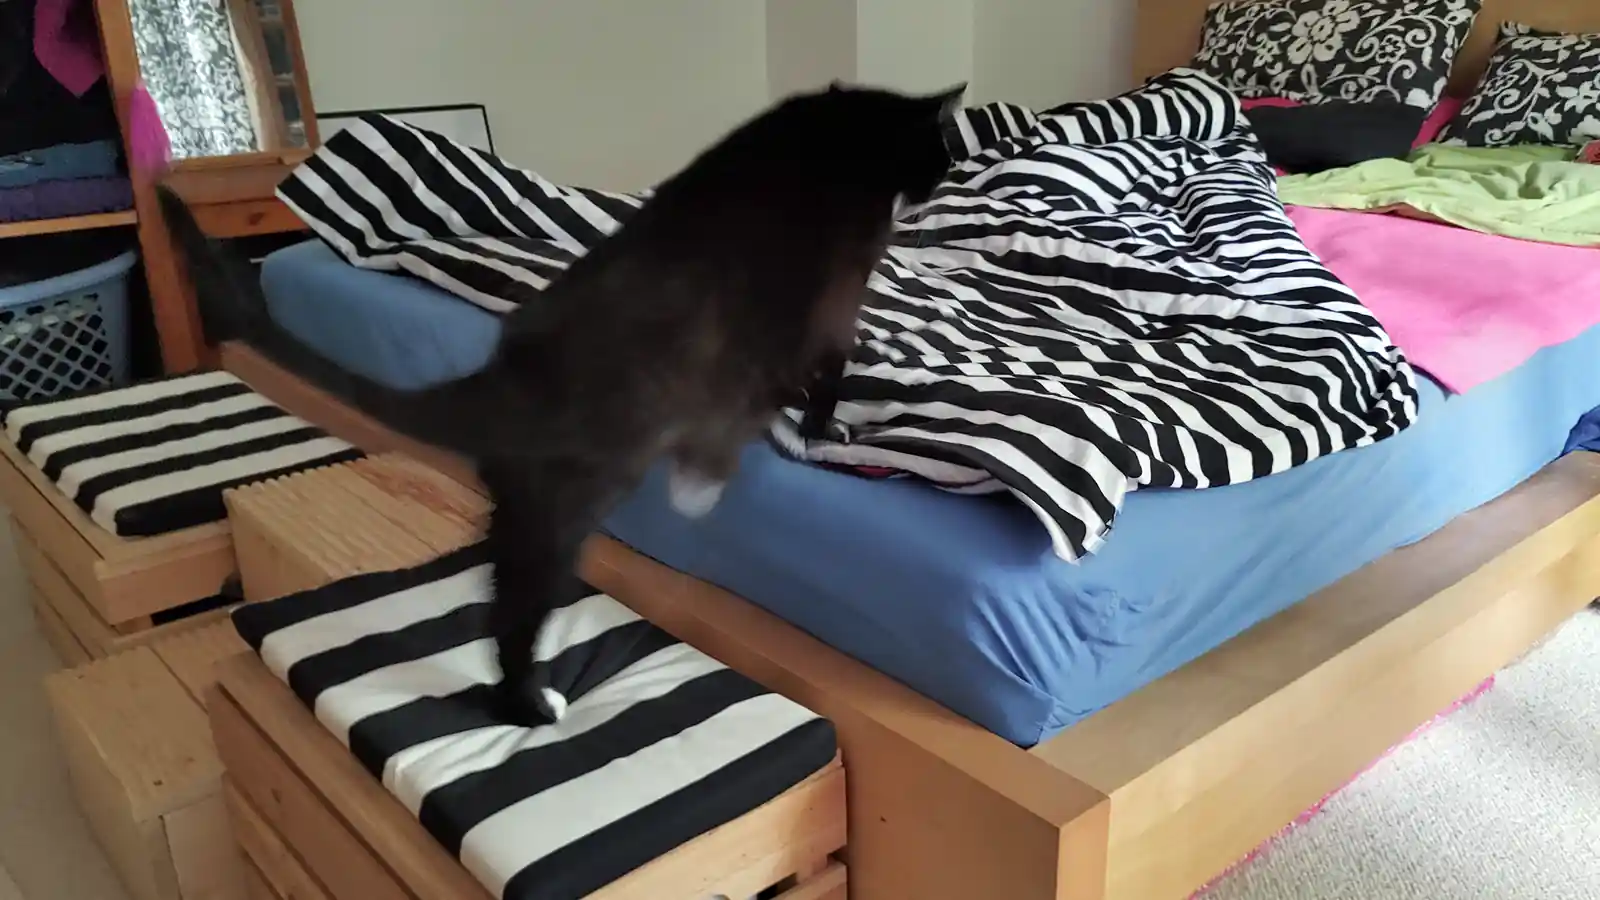 Arthrose-Katze Luzi steigt über Kiste aufs Bett. Das ging aber auch schon vor Zeel.